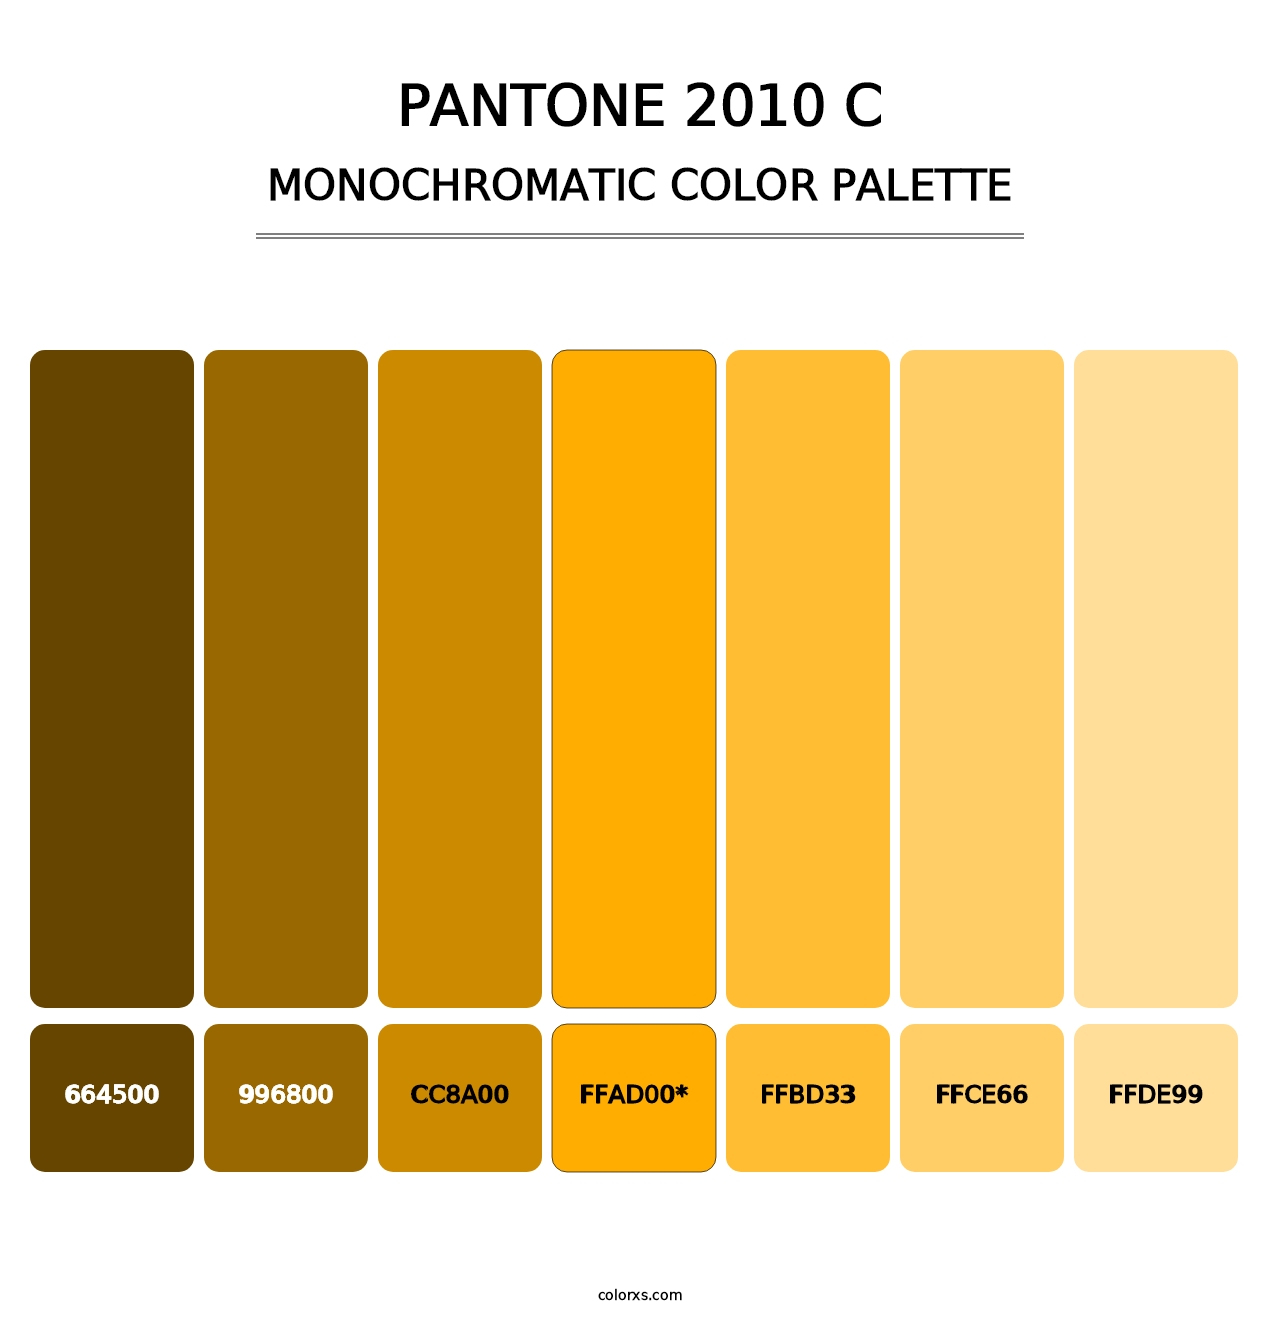 PANTONE 2010 C - Monochromatic Color Palette